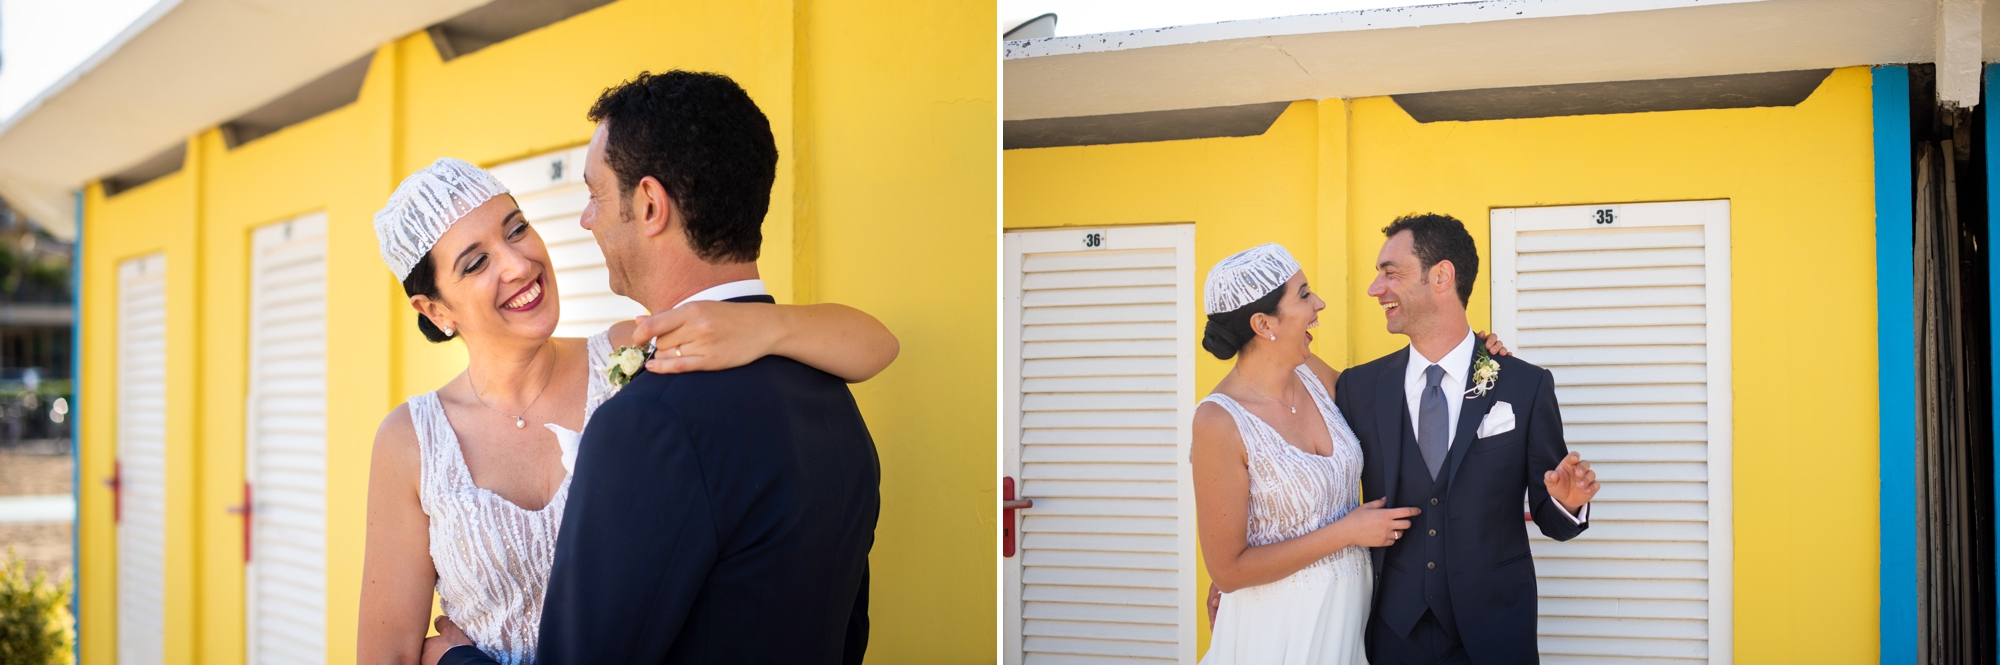 fotografo-matrimonio-rimini-sul-mare